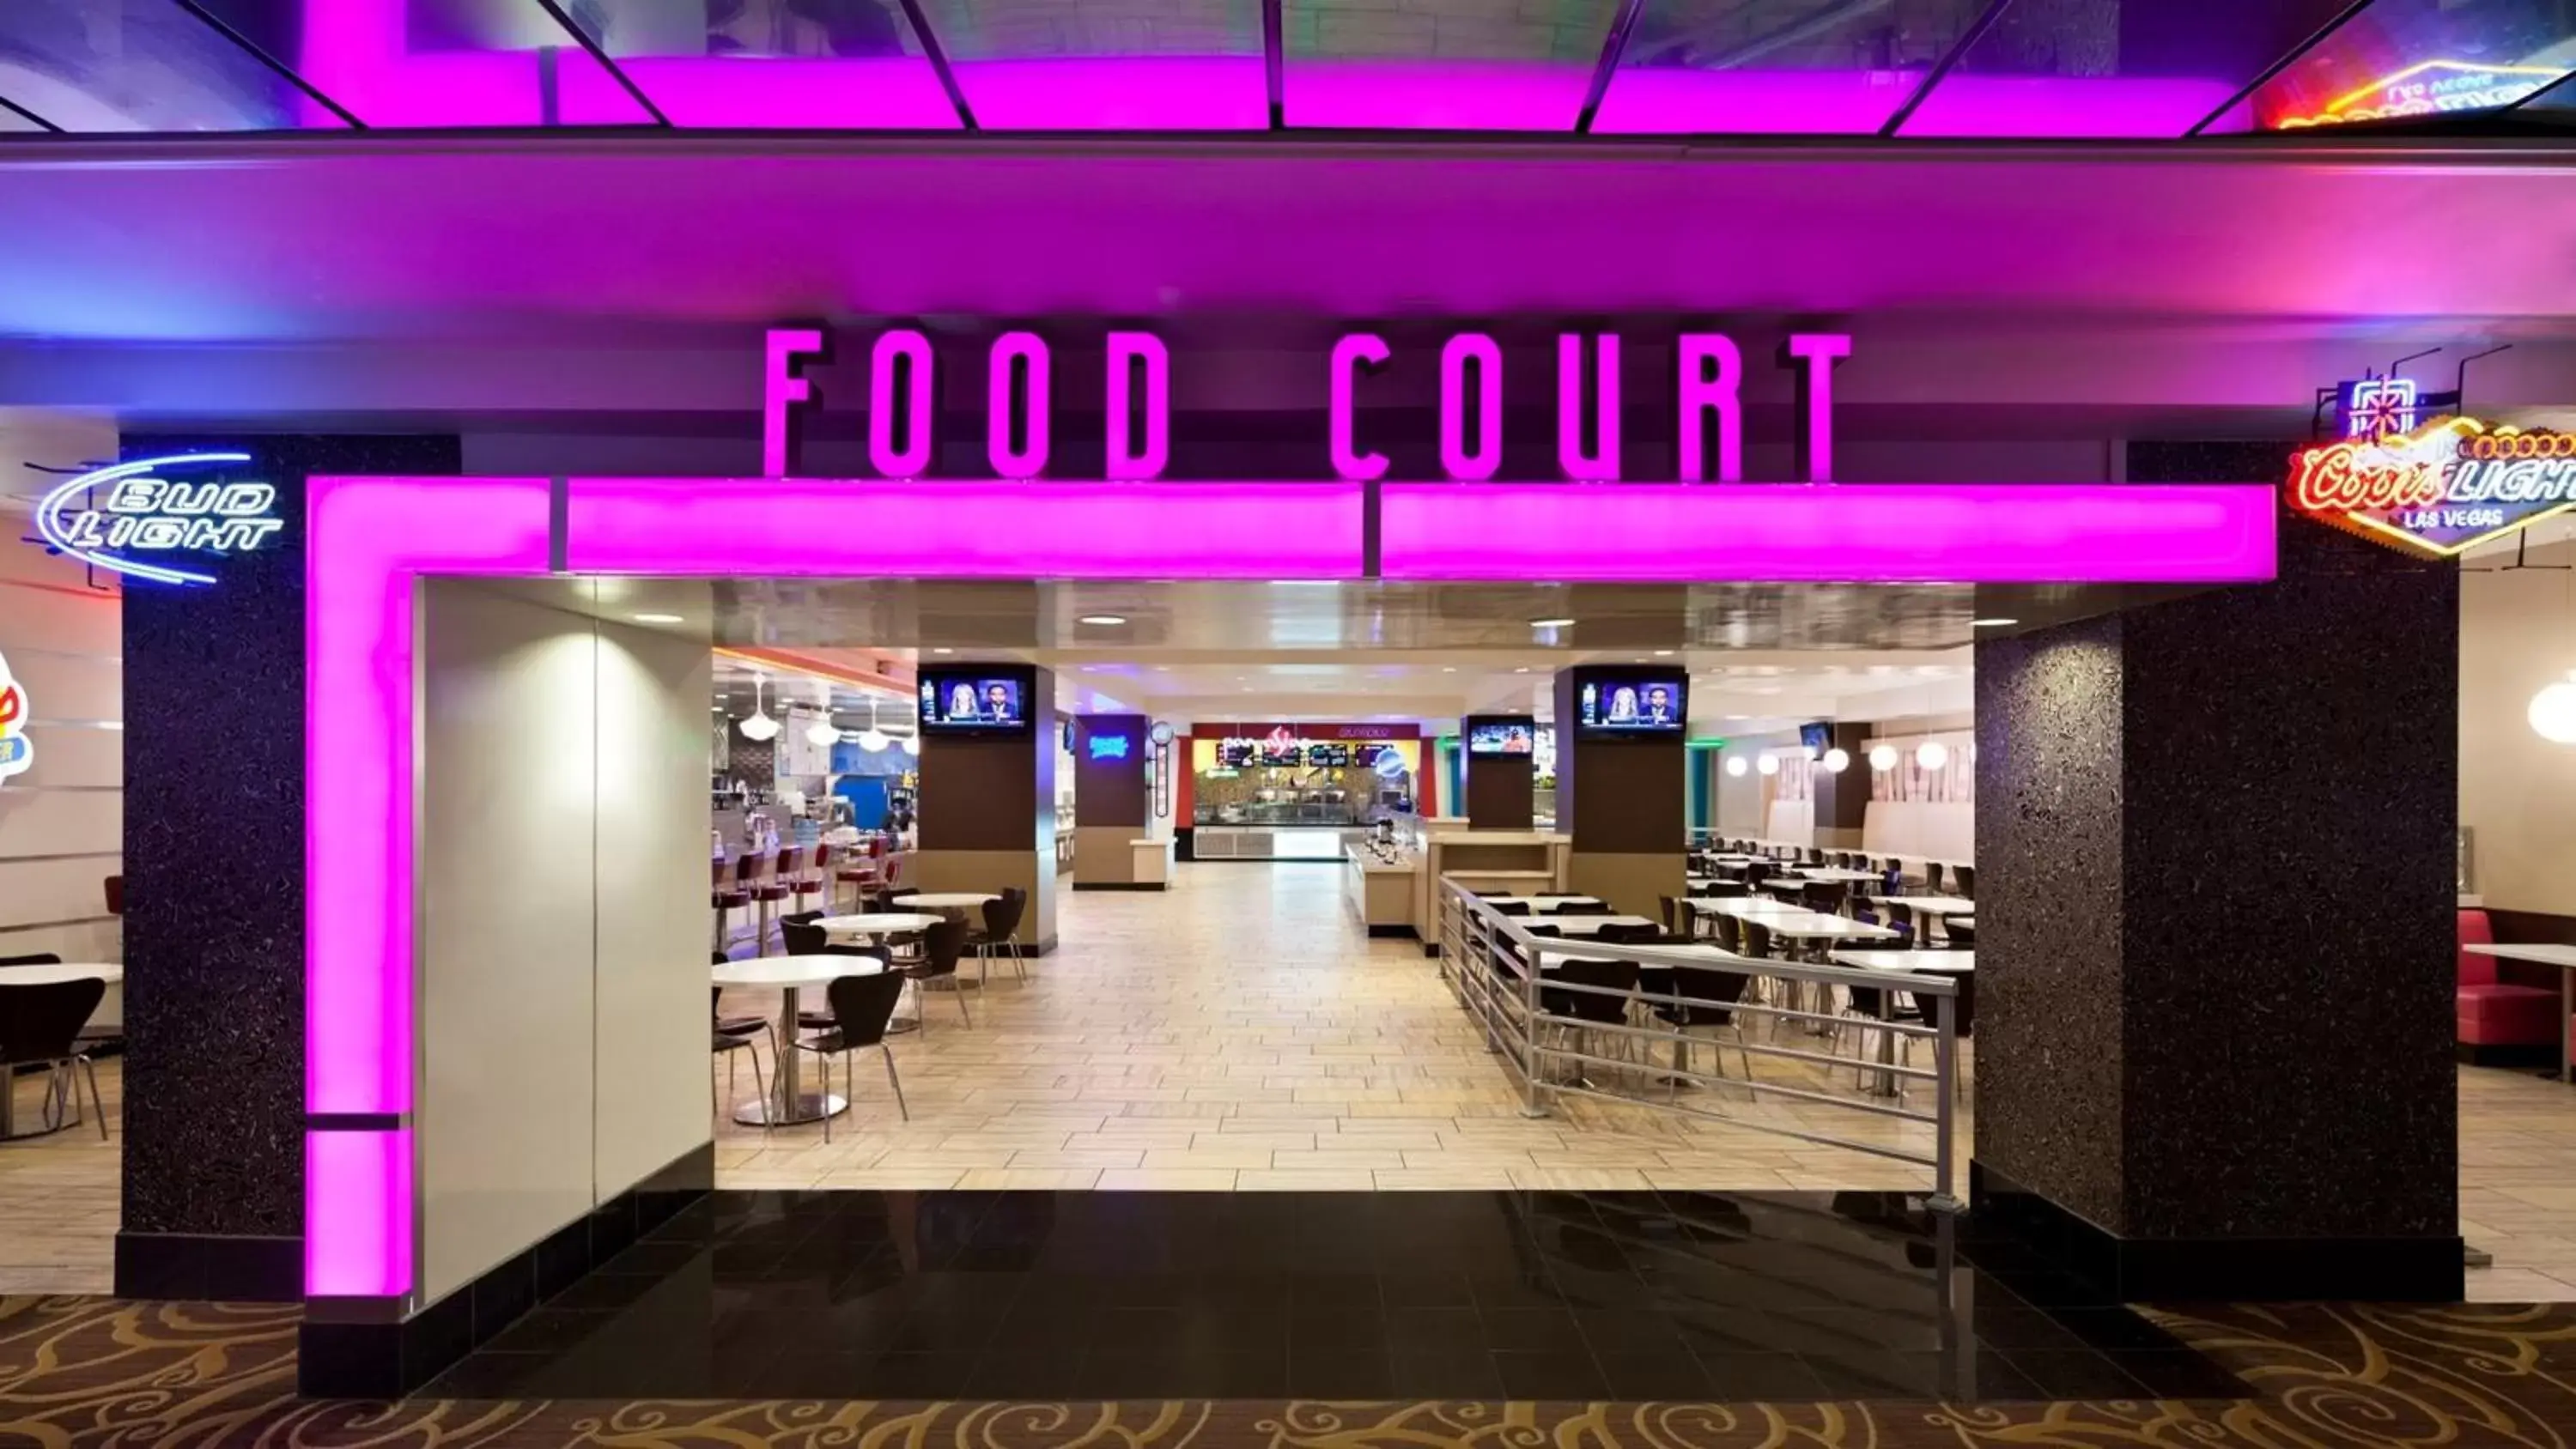 Restaurant/places to eat in Flamingo Las Vegas Hotel & Casino